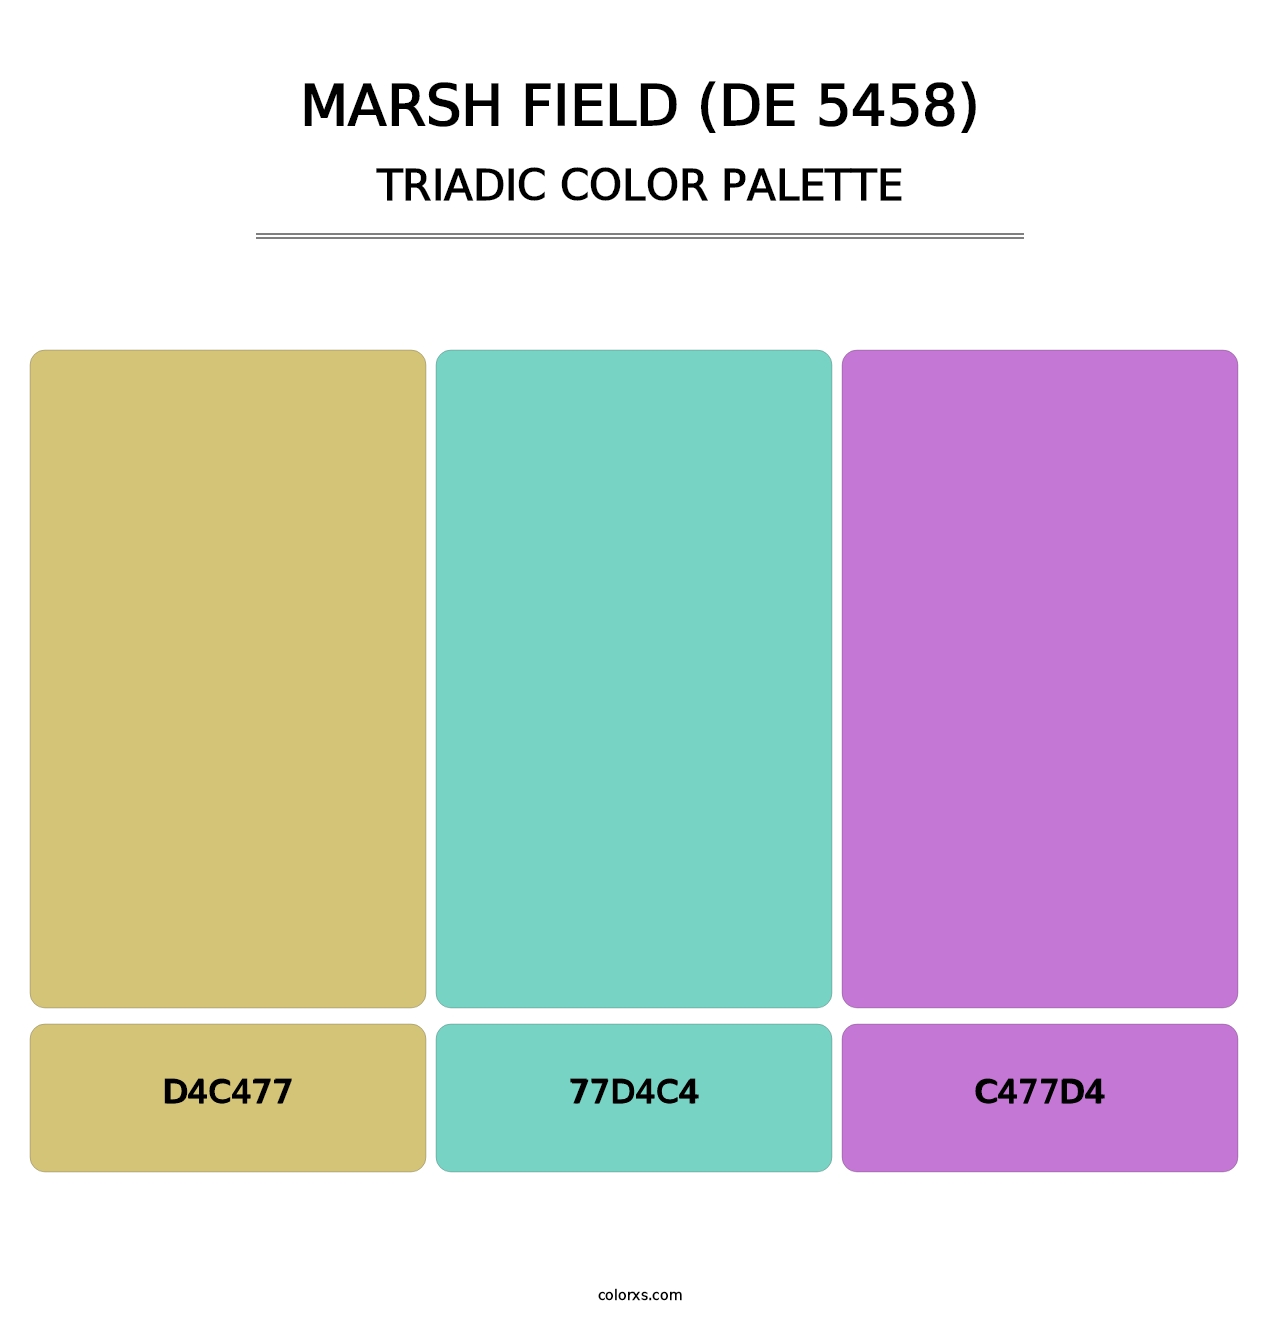 Marsh Field (DE 5458) - Triadic Color Palette